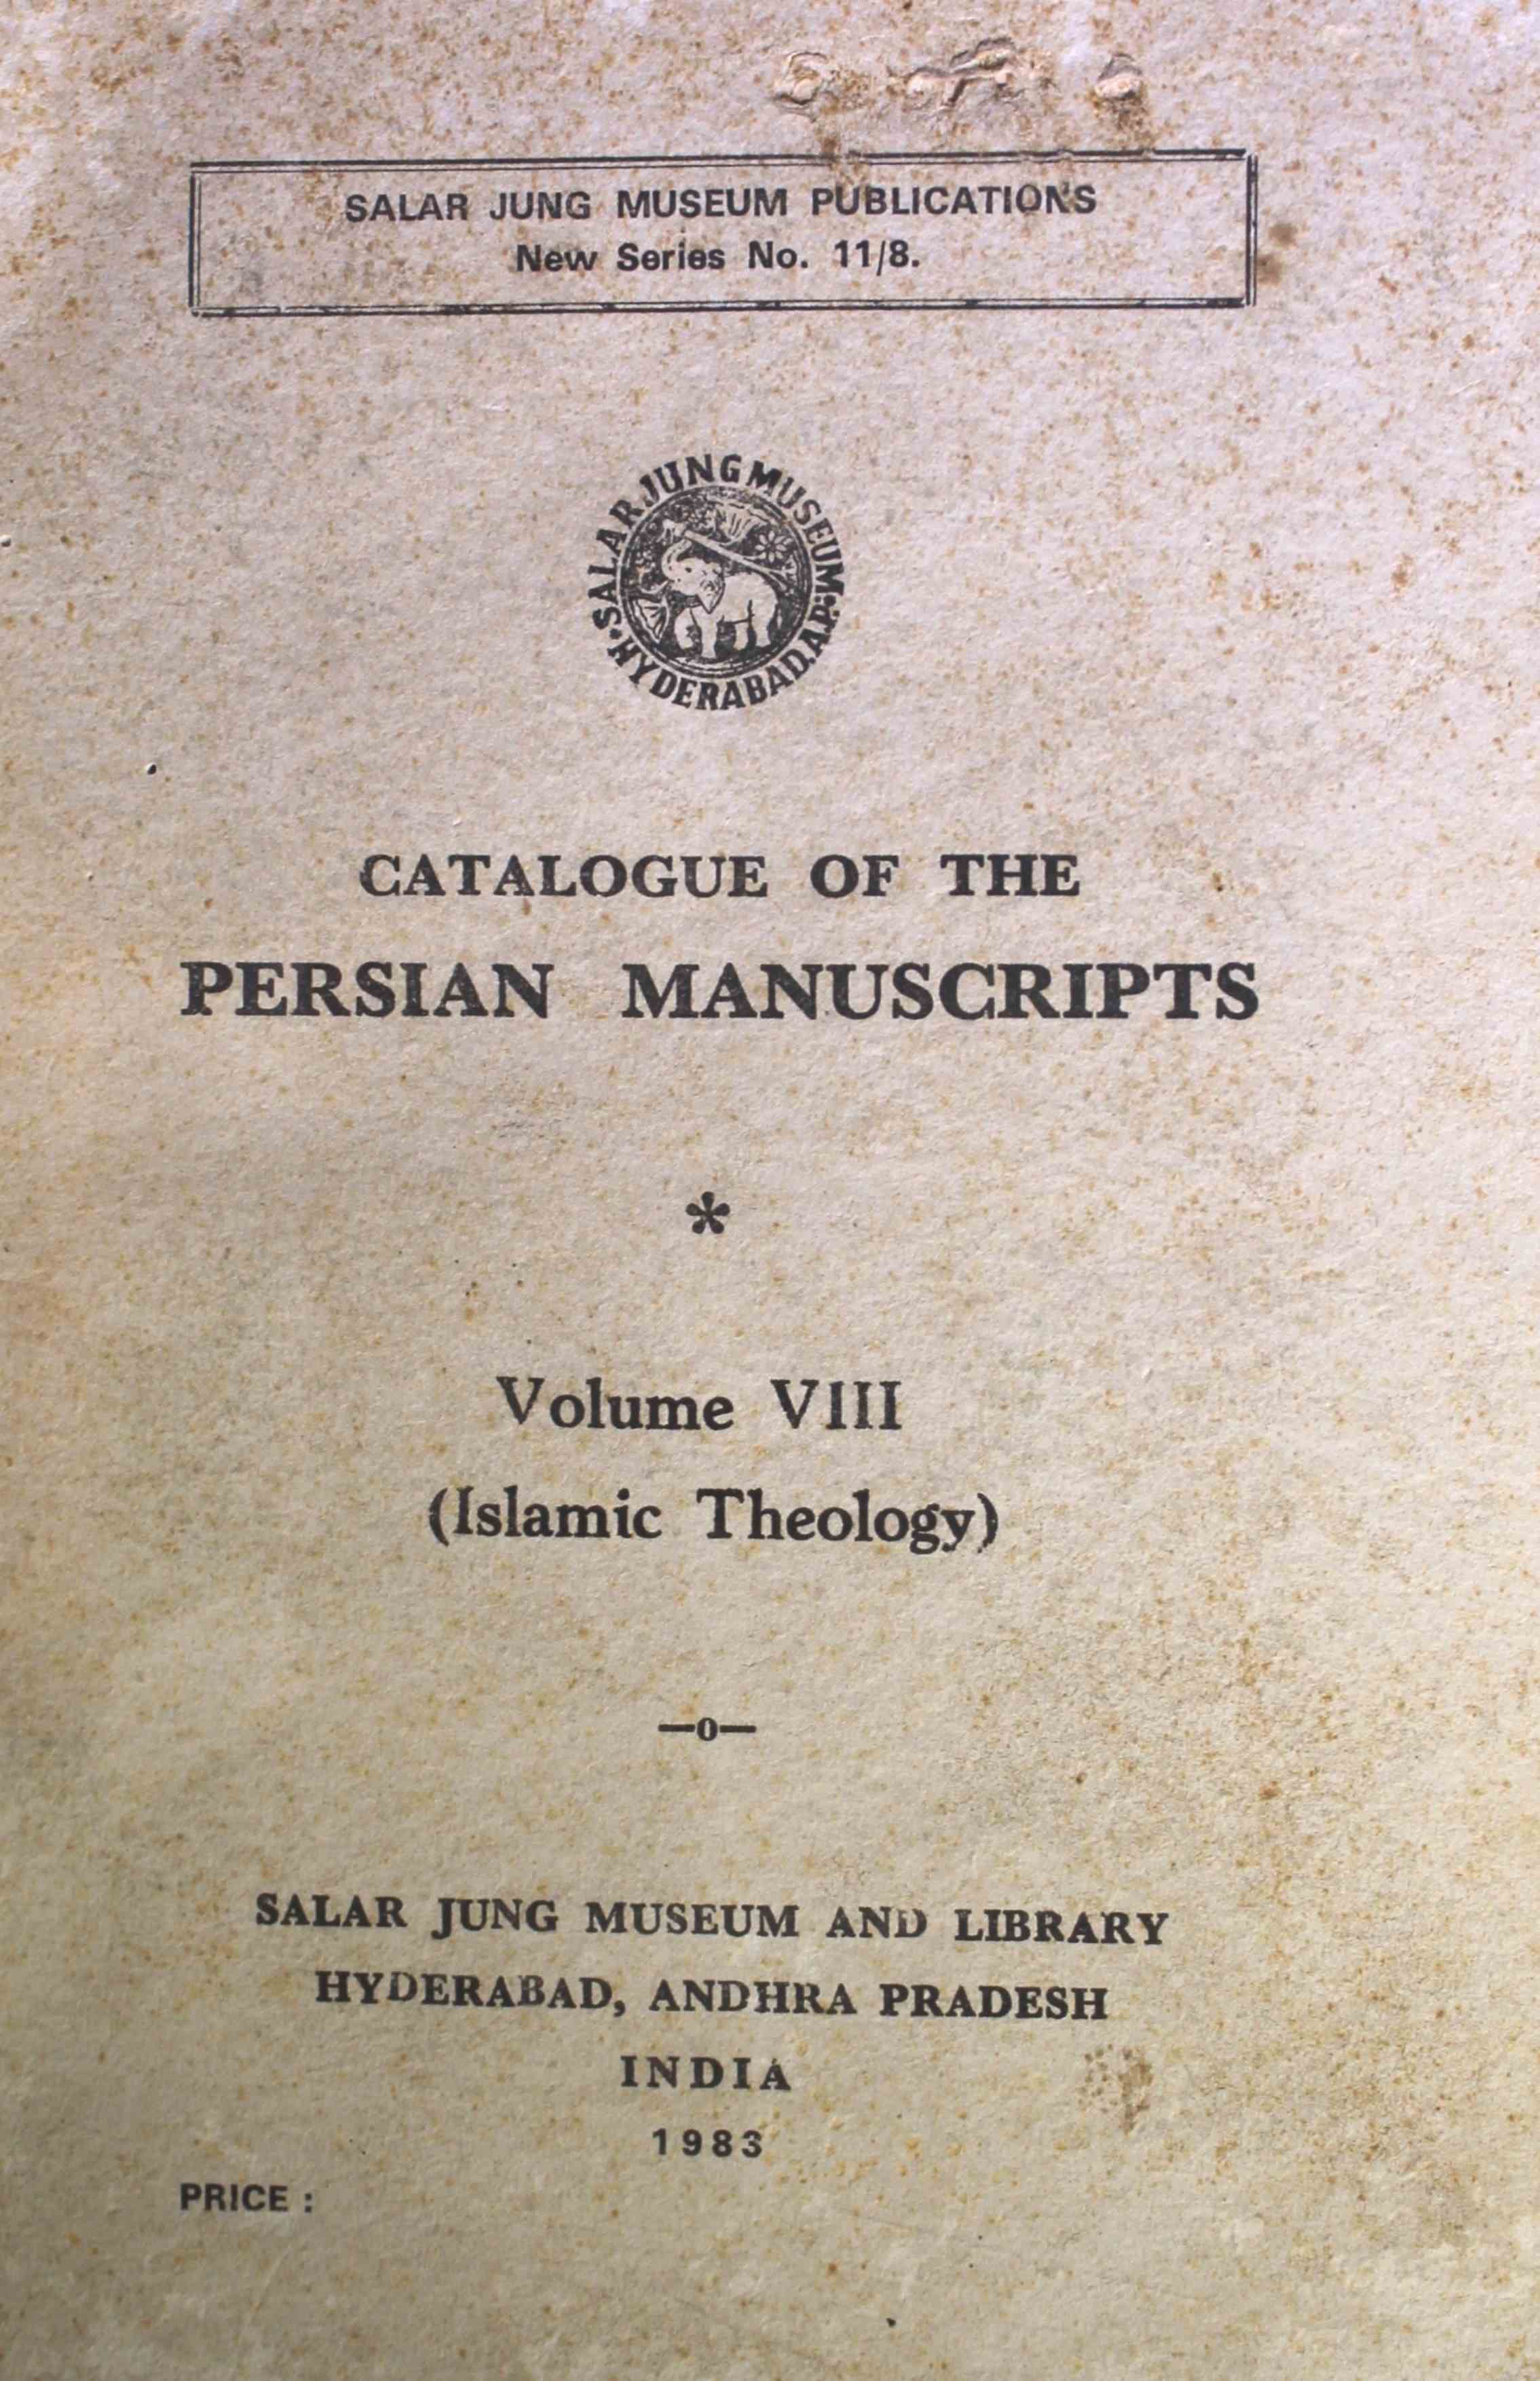 فہرست مشروح مخطوطات فارسی